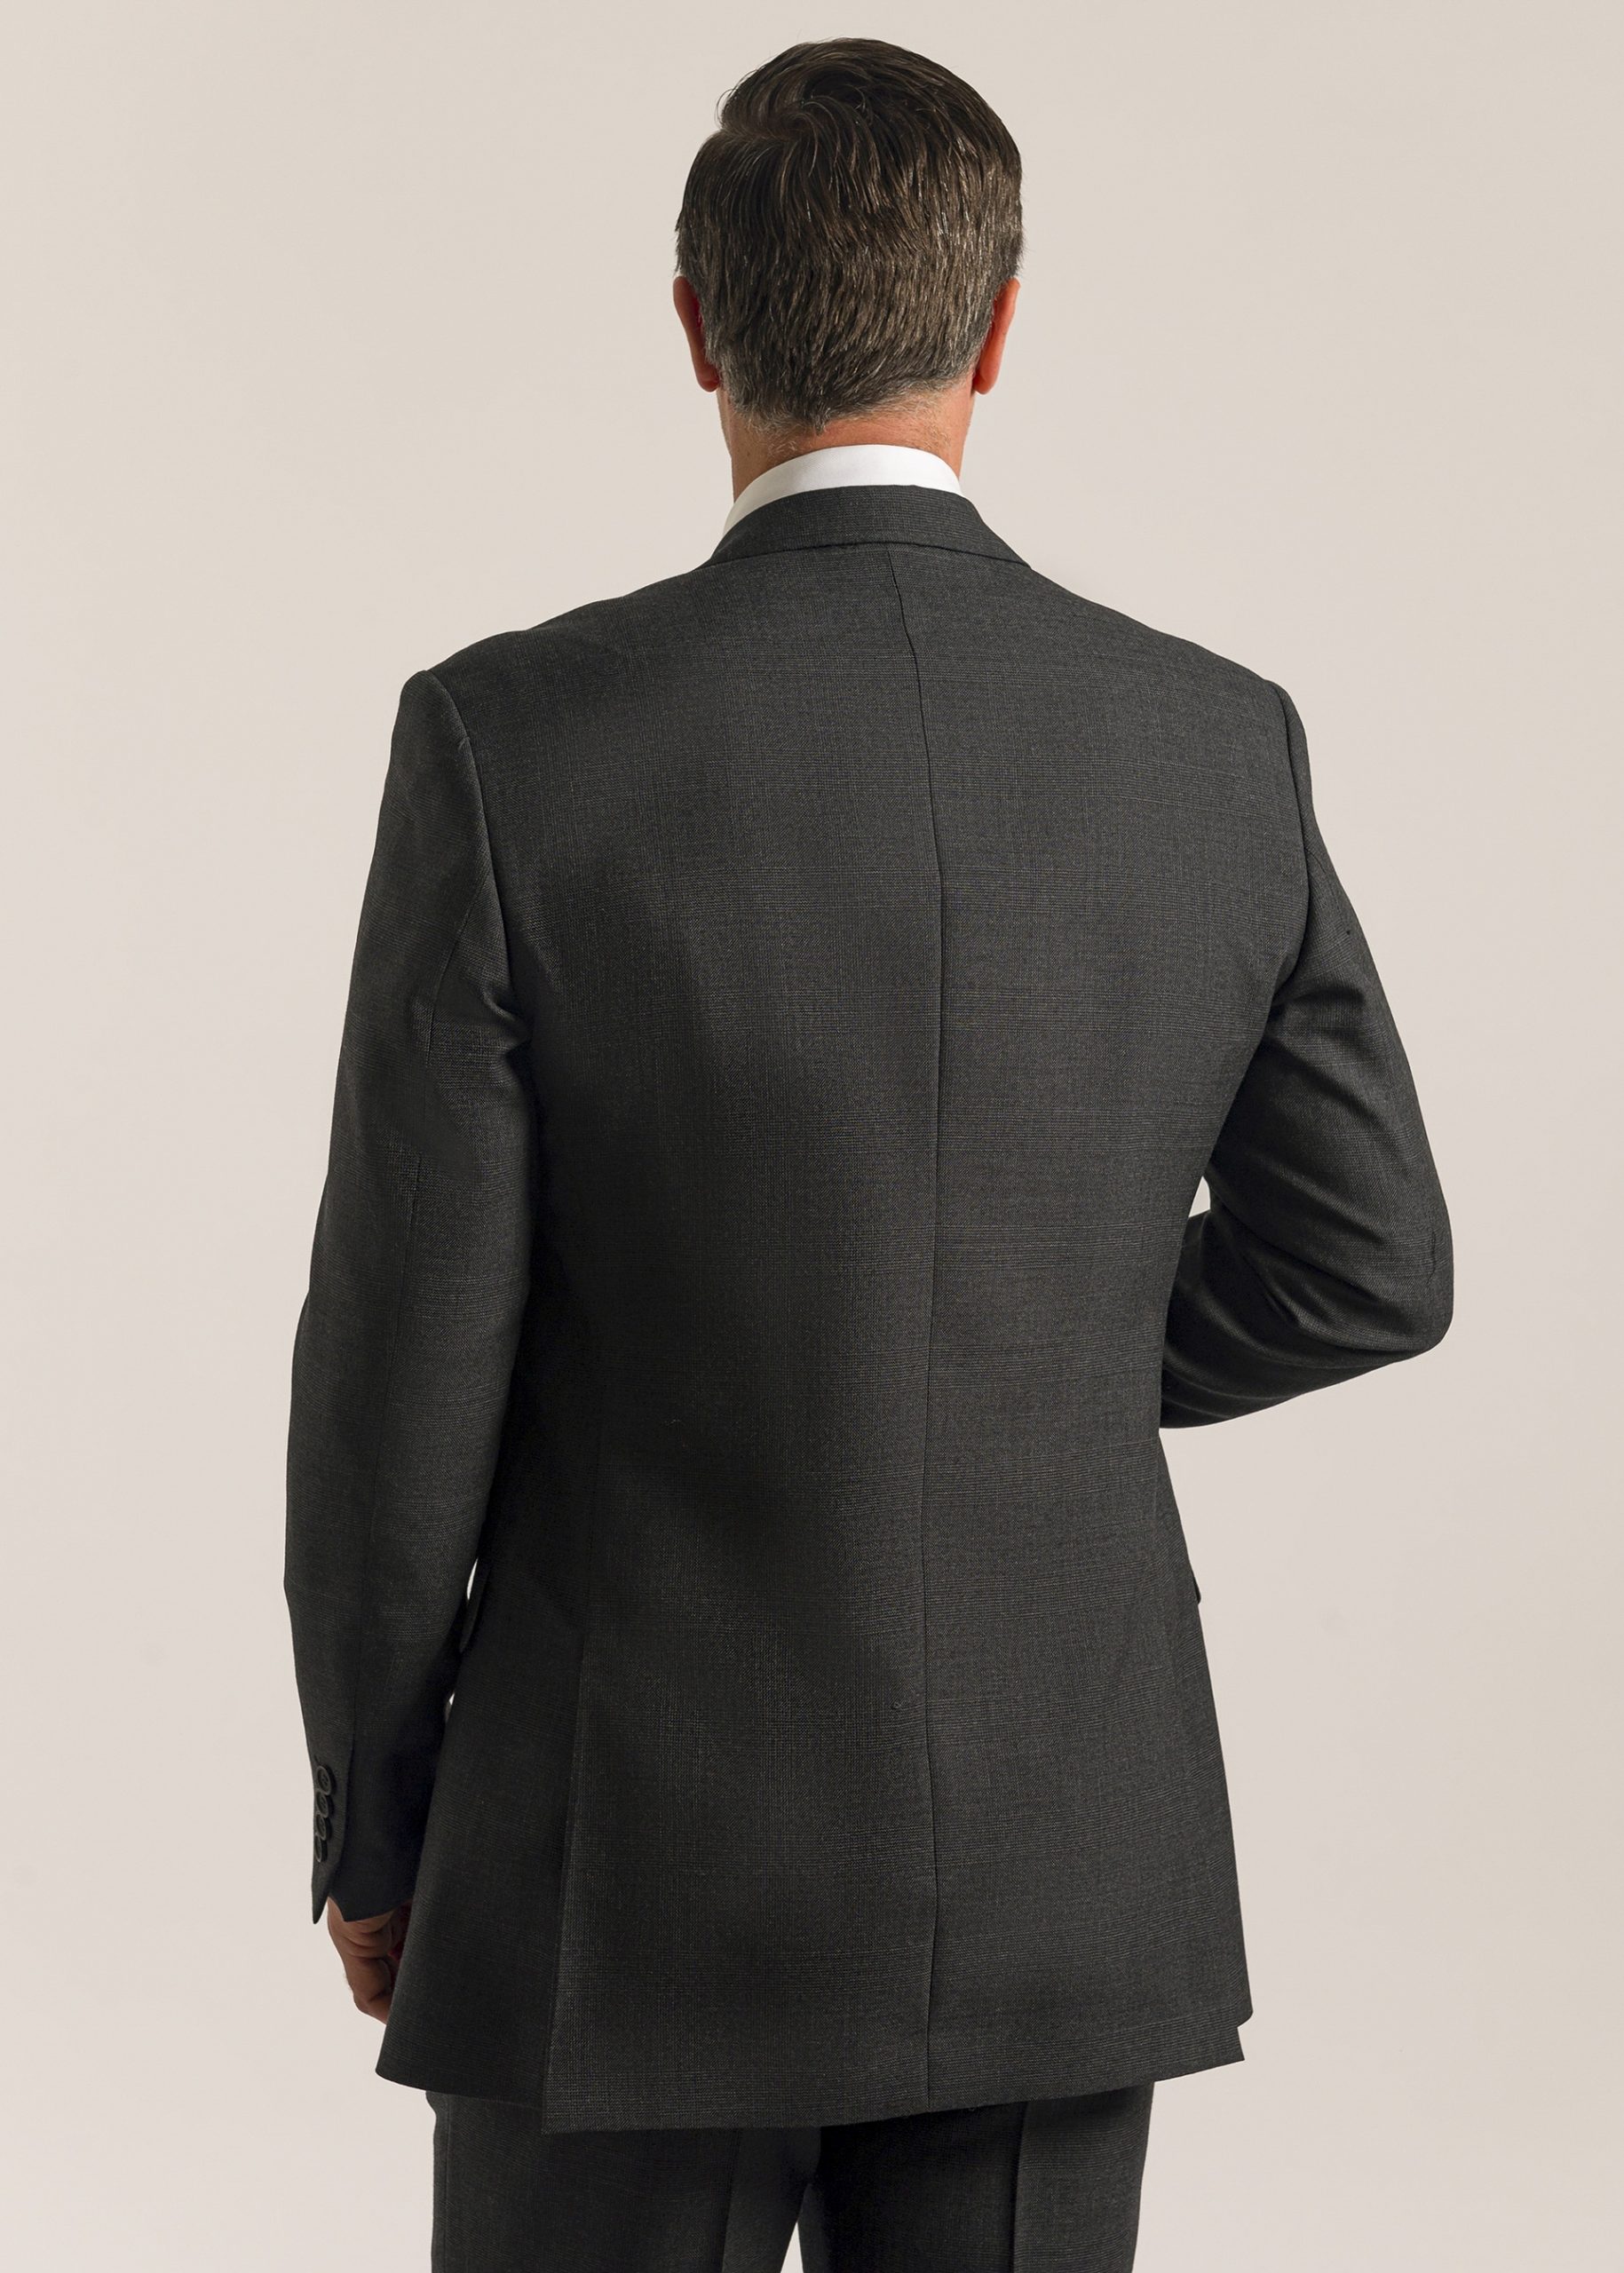 Back of men’s formal grey Glen check suit jacket